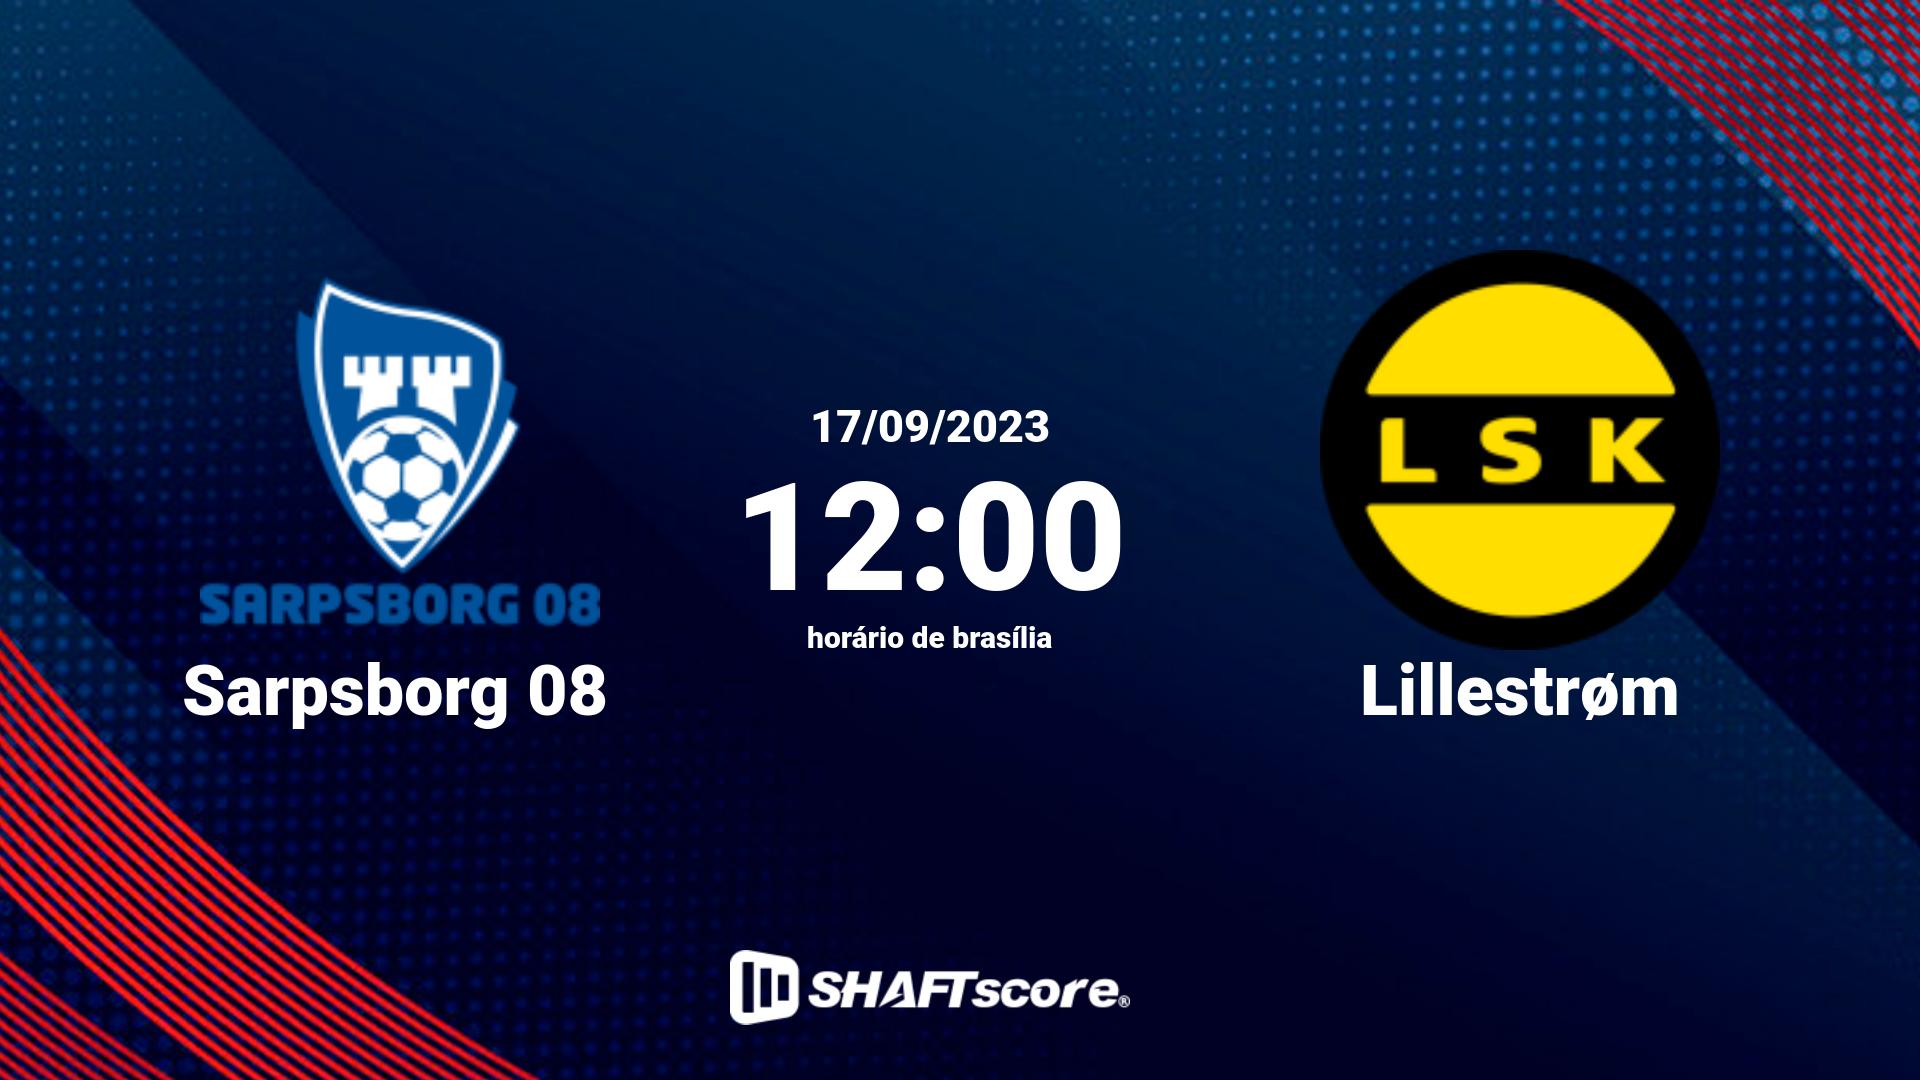 Estatísticas do jogo Sarpsborg 08 vs Lillestrøm 17.09 12:00